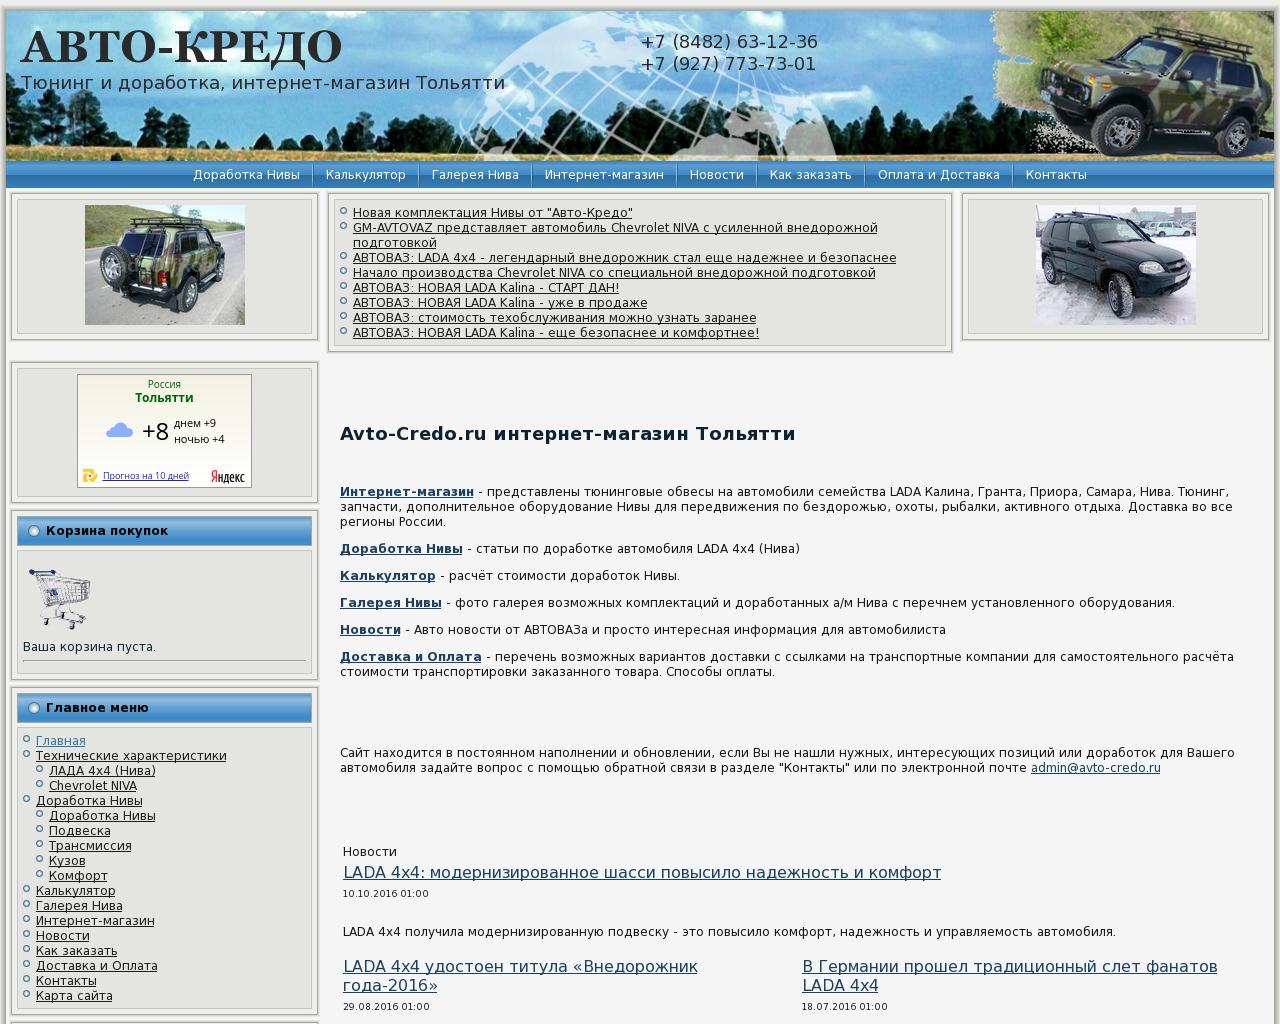 Изображение сайта avto-credo.ru в разрешении 1280x1024